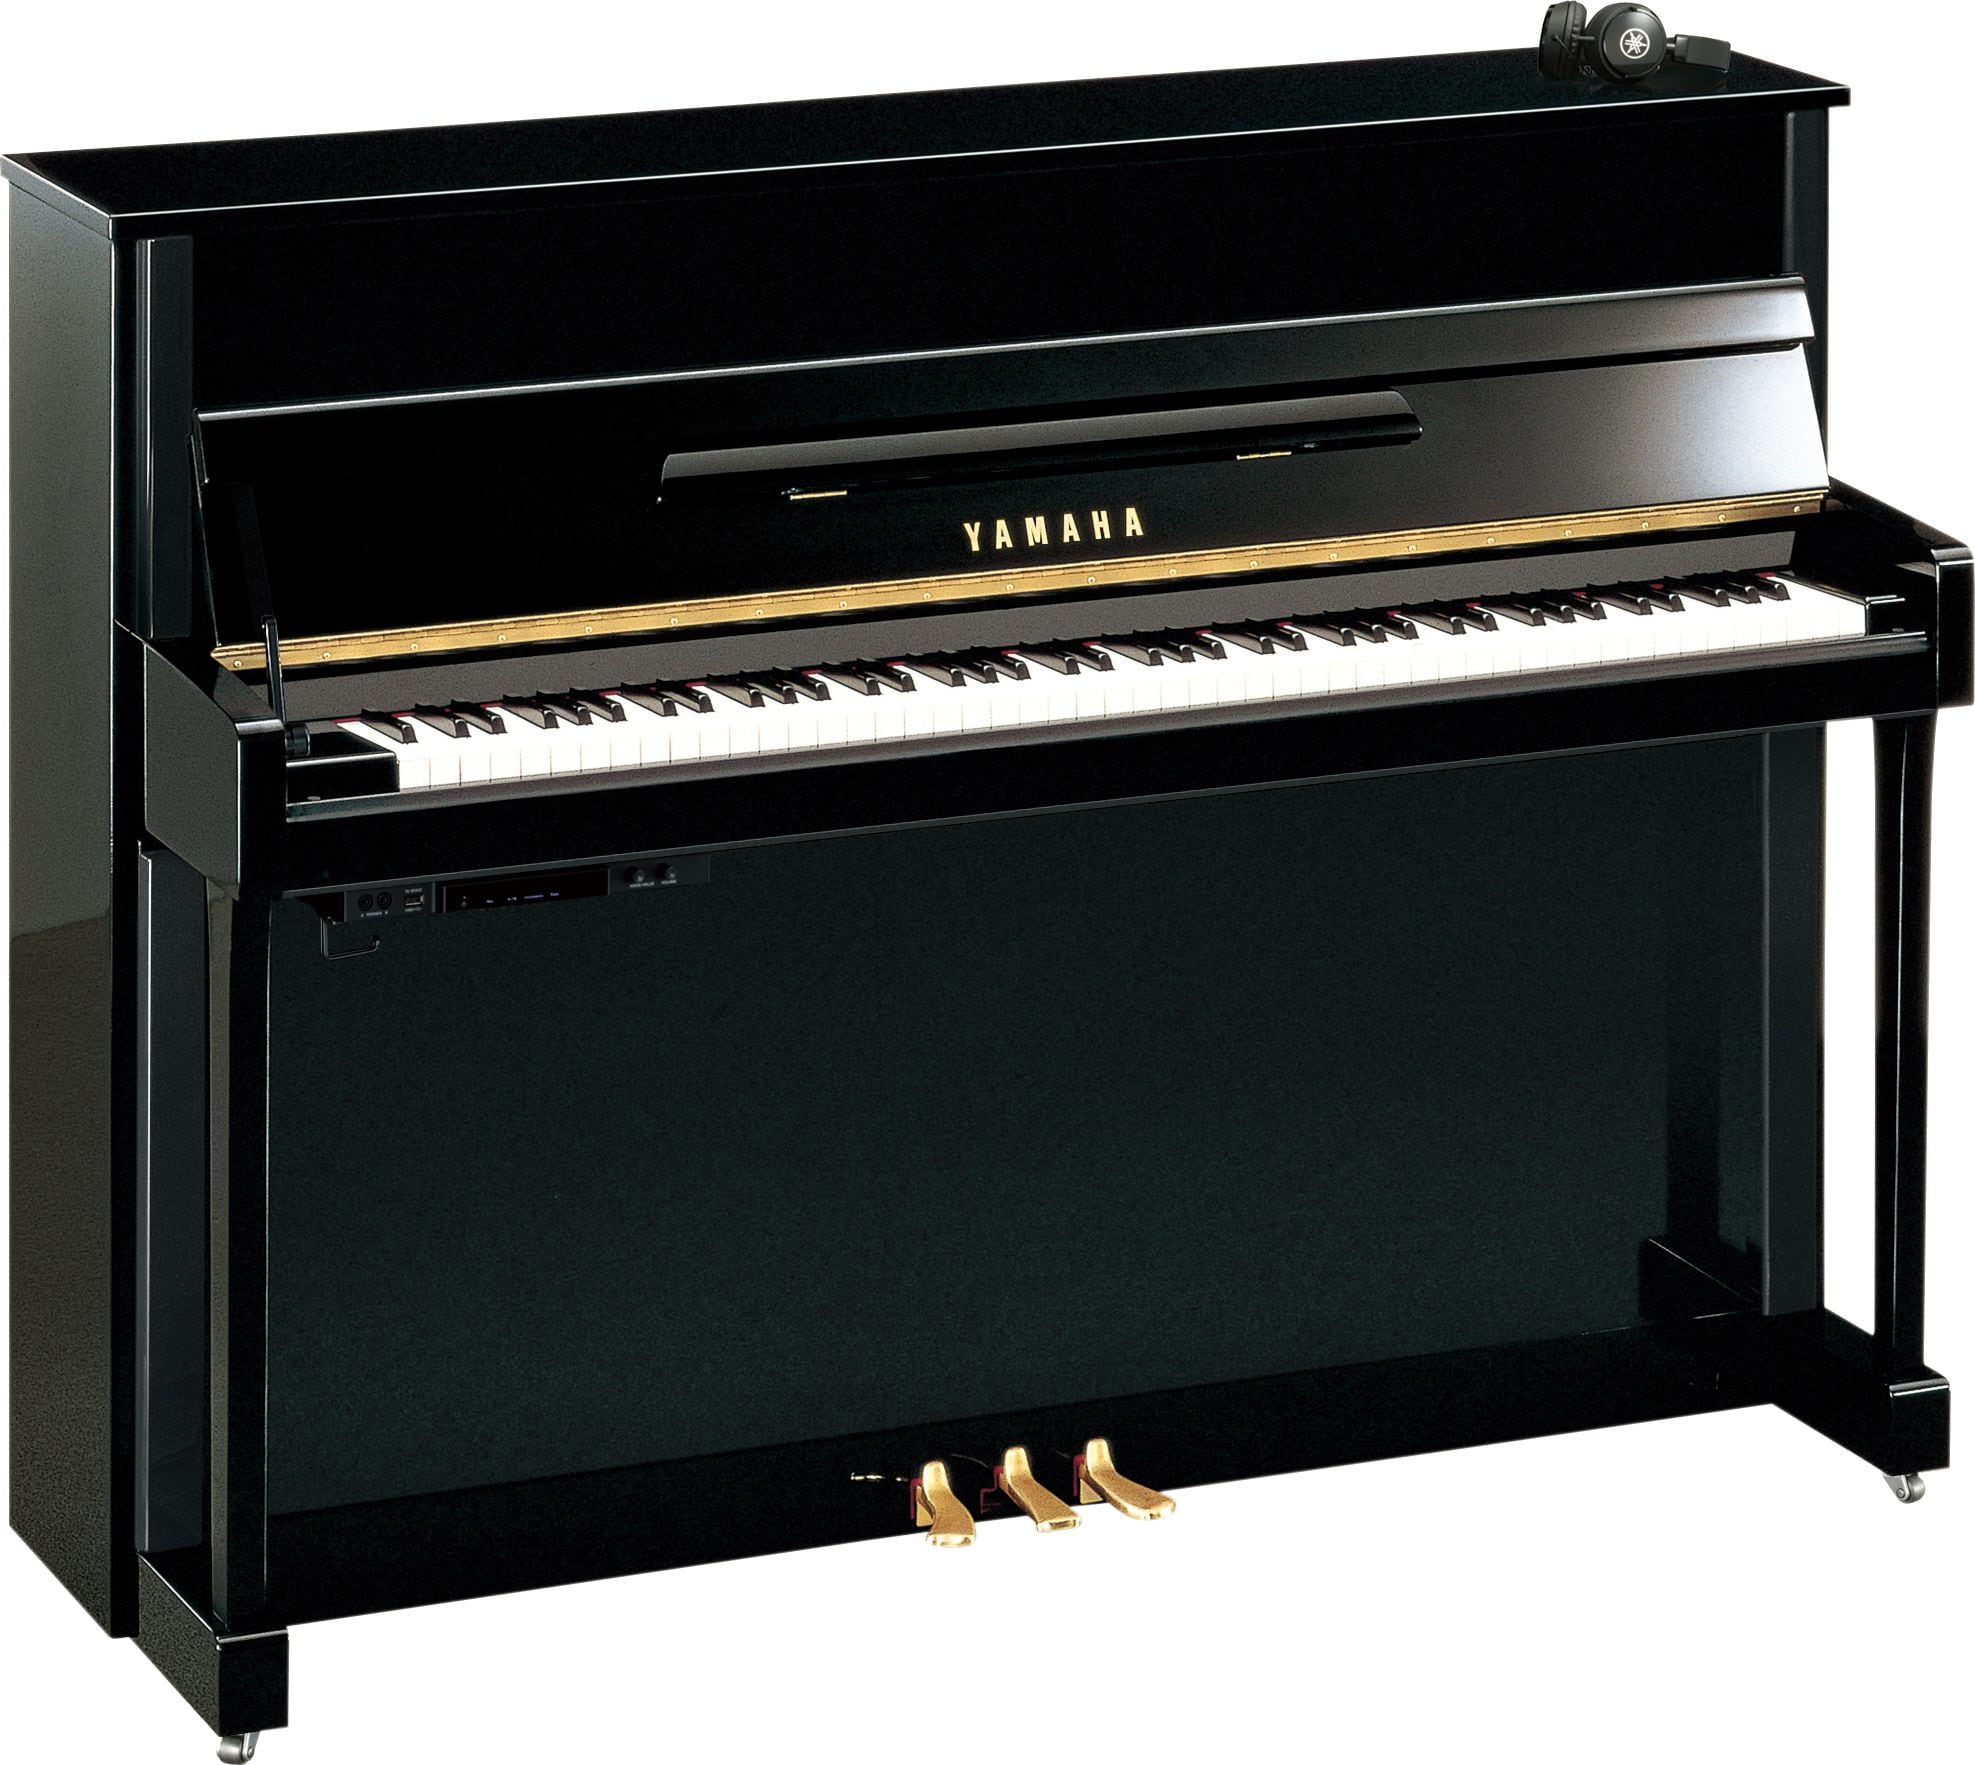 【高評価】YAMAHA ヤマハ アップライトピアノ U3G SN1330263 高級機種 1971年製 中古 配送要確認 送料着払い 直接引き取り要予約 アップライトピアノ